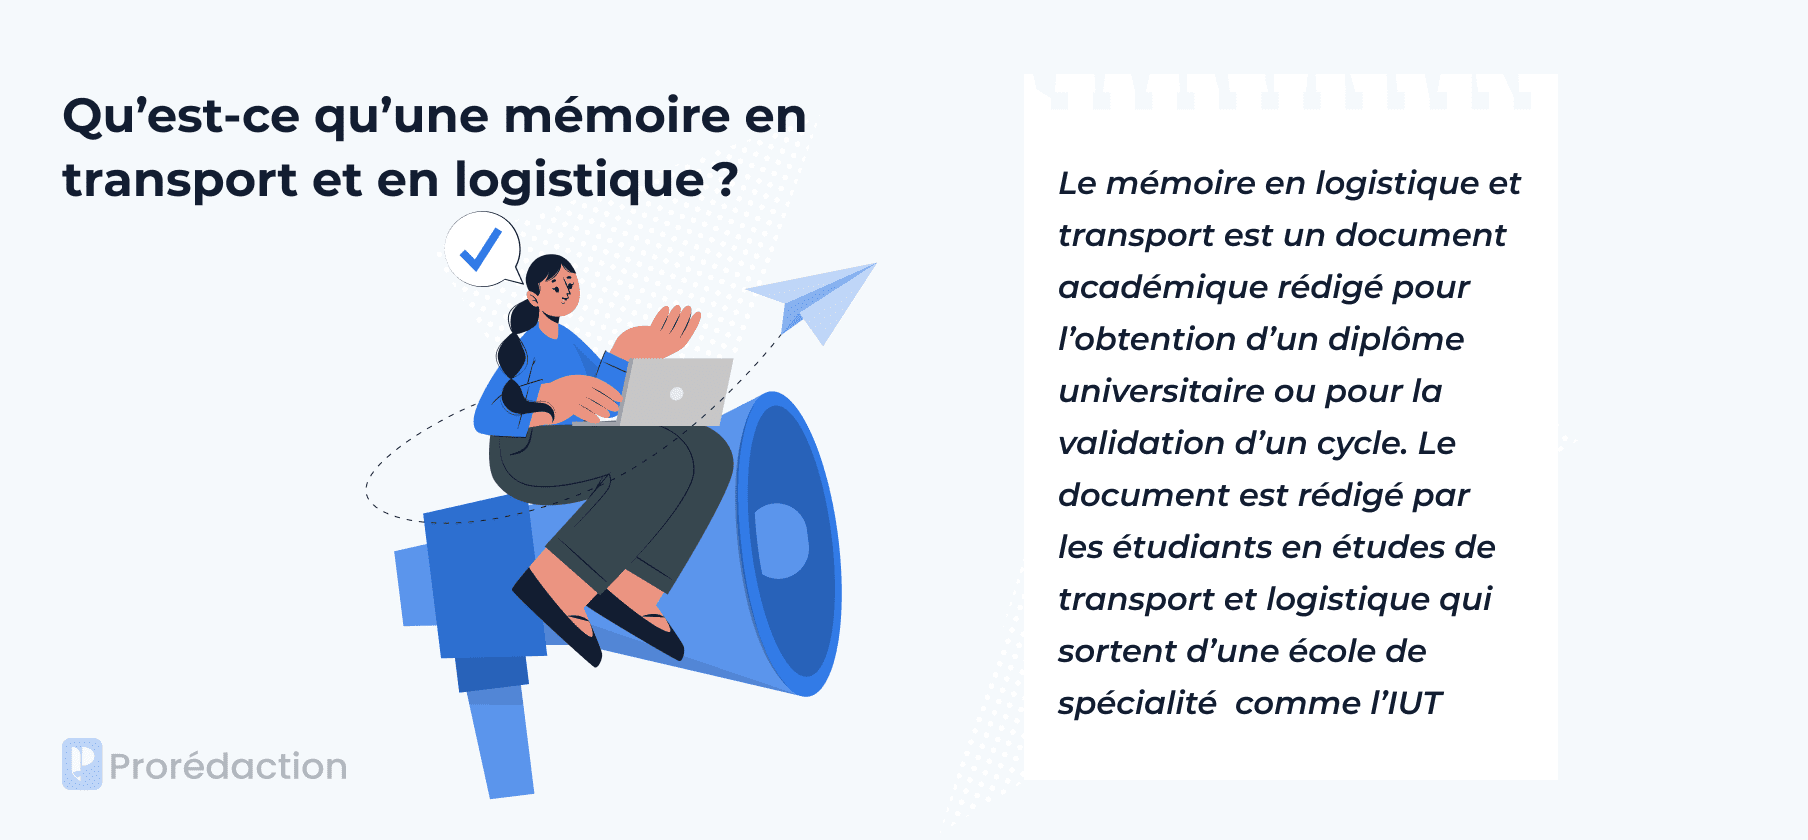 📋 Sujet de Mémoire en Logistique et Transport ✔️